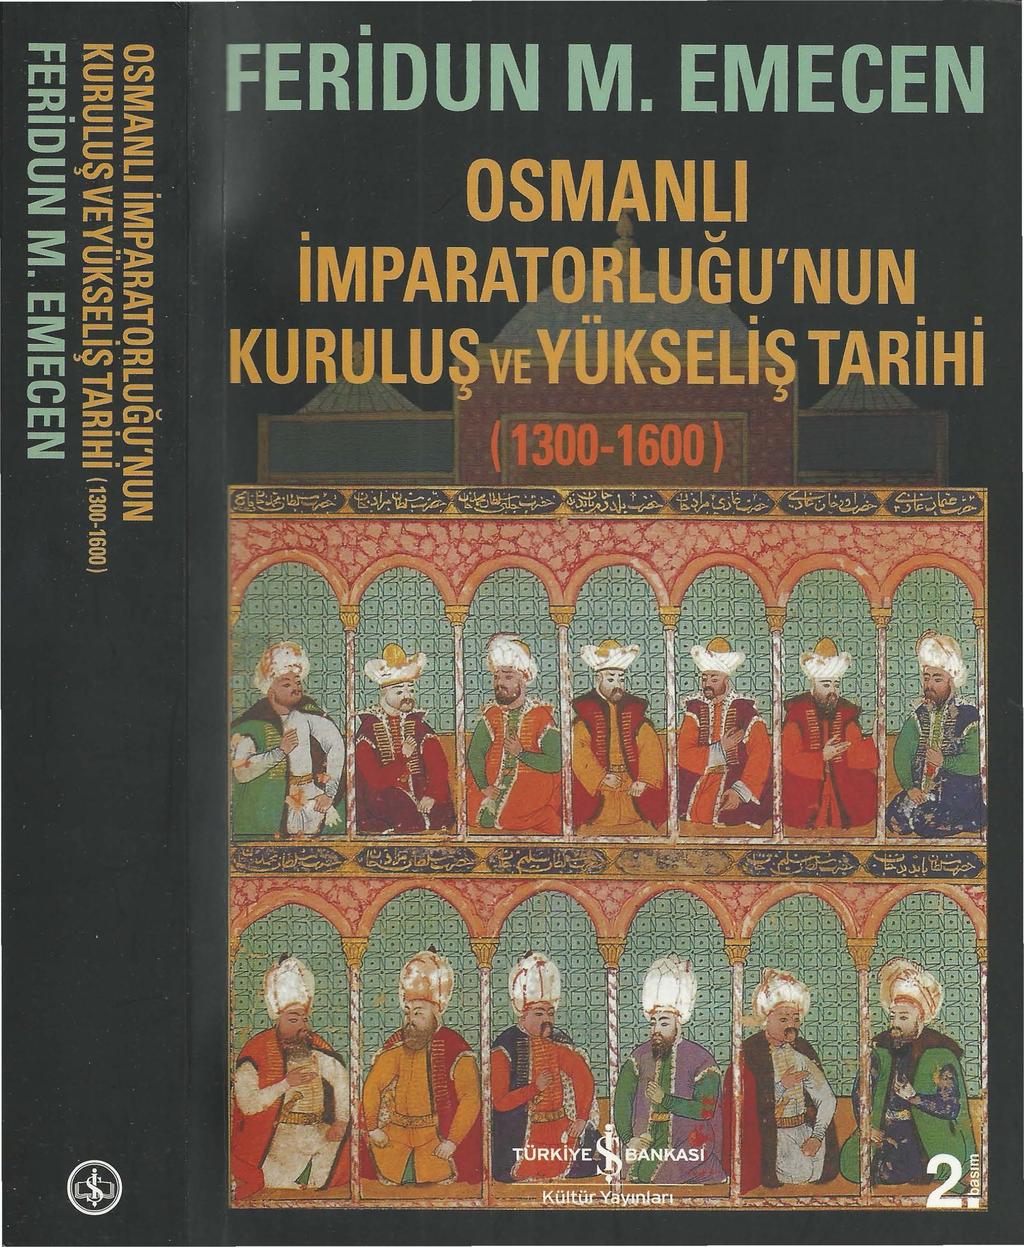 osmanli imparatorlugunun kurulus ve yukselis tarihi pdf free download